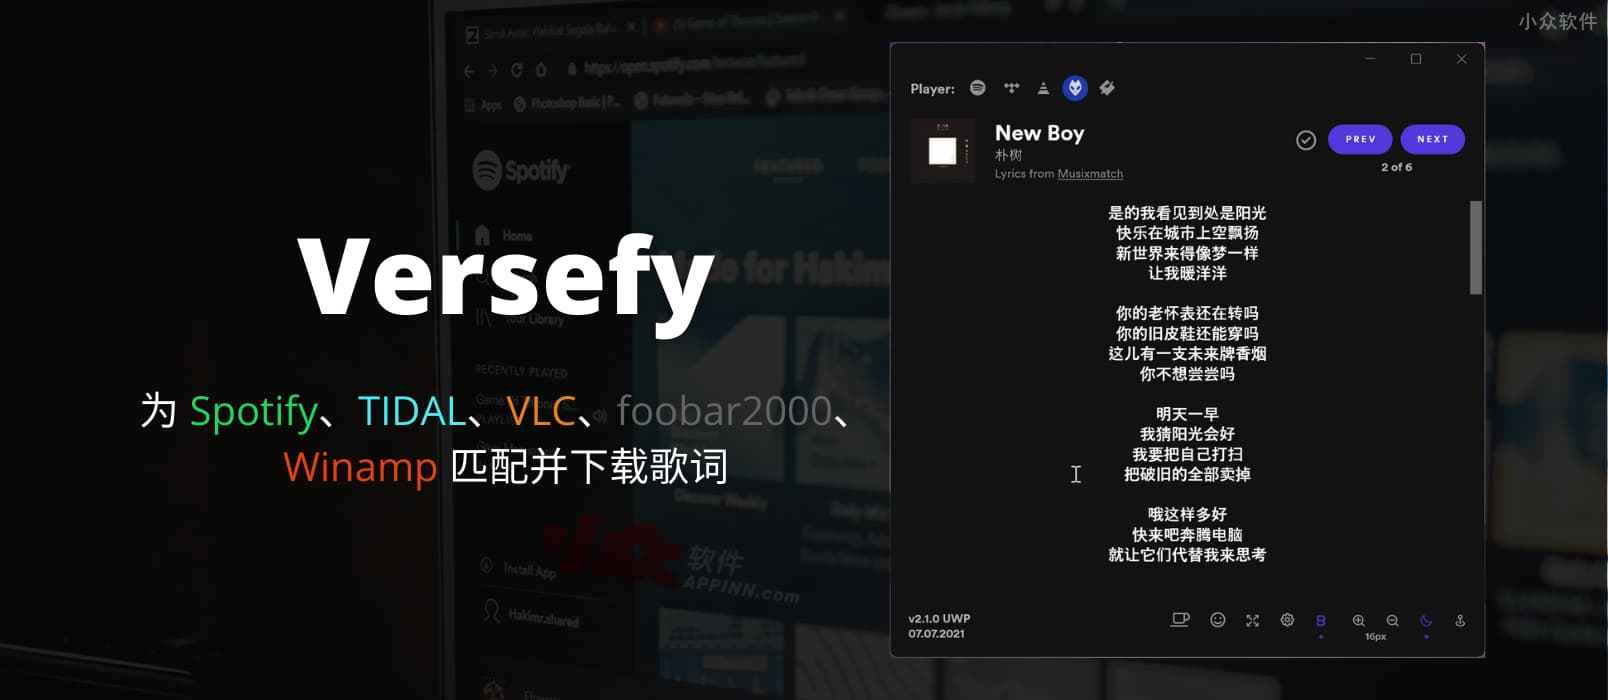 Versefy - 为 Spotify、TIDAL、VLC、foobar2000、Winamp 匹配并下载歌词[Windows] 1